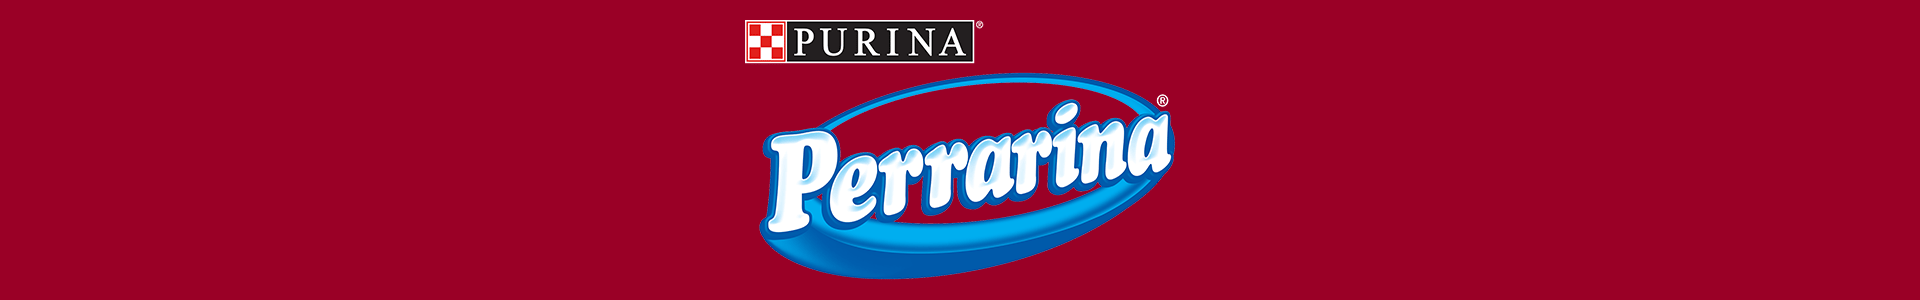 PERRARINA®